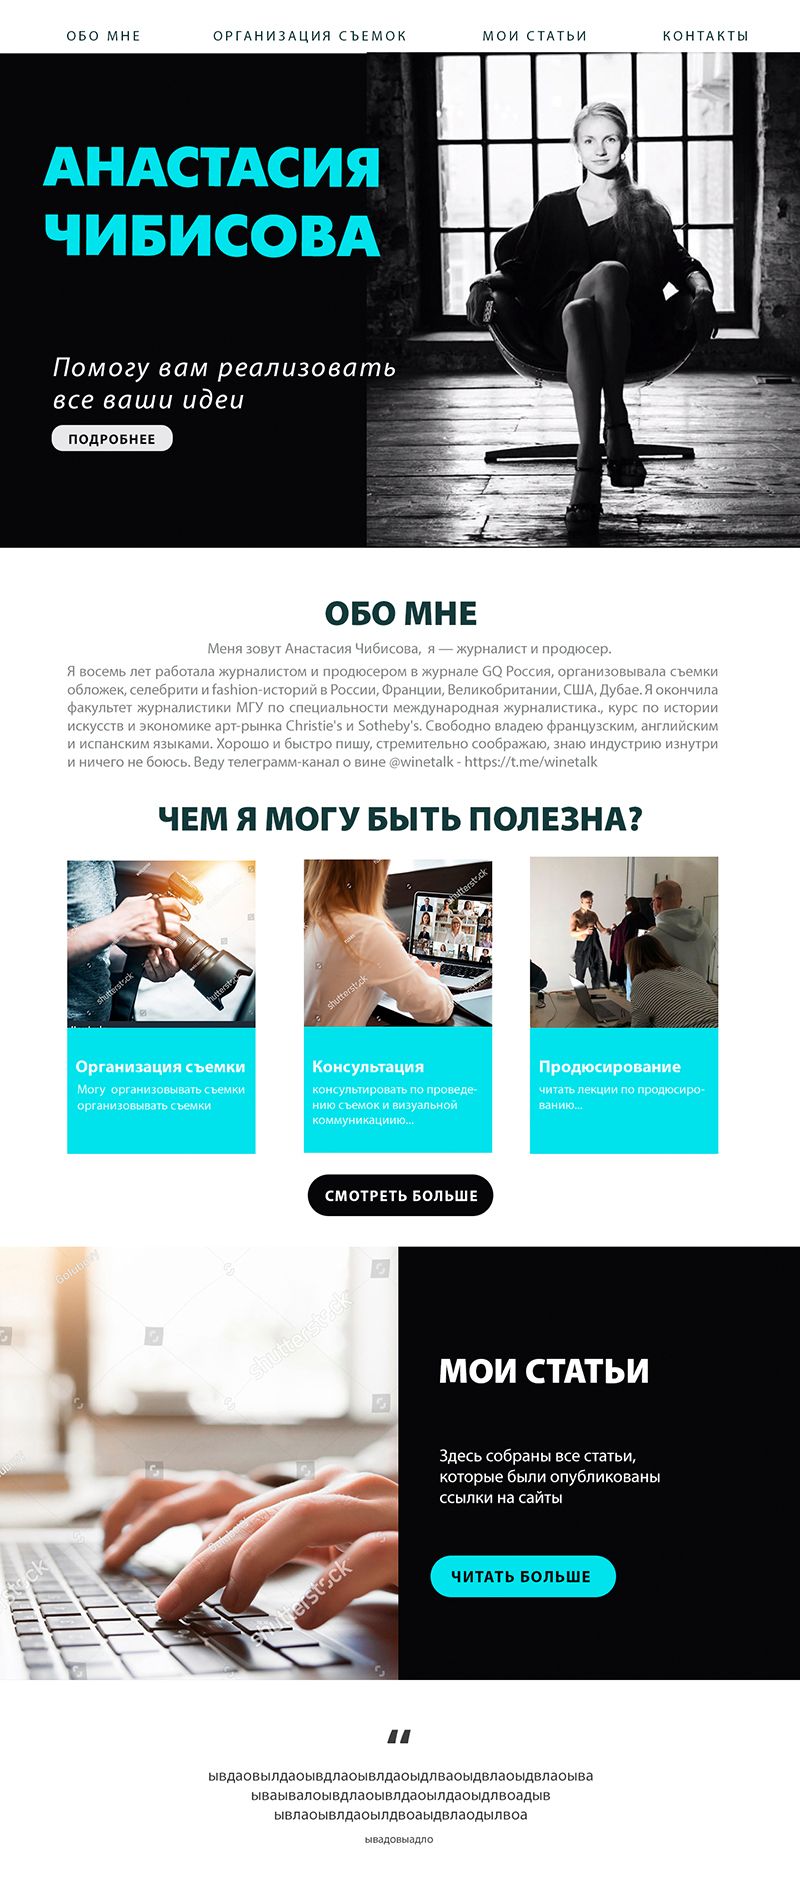 Веб-сайт для chibisova.com - дизайнер kor_evgenia